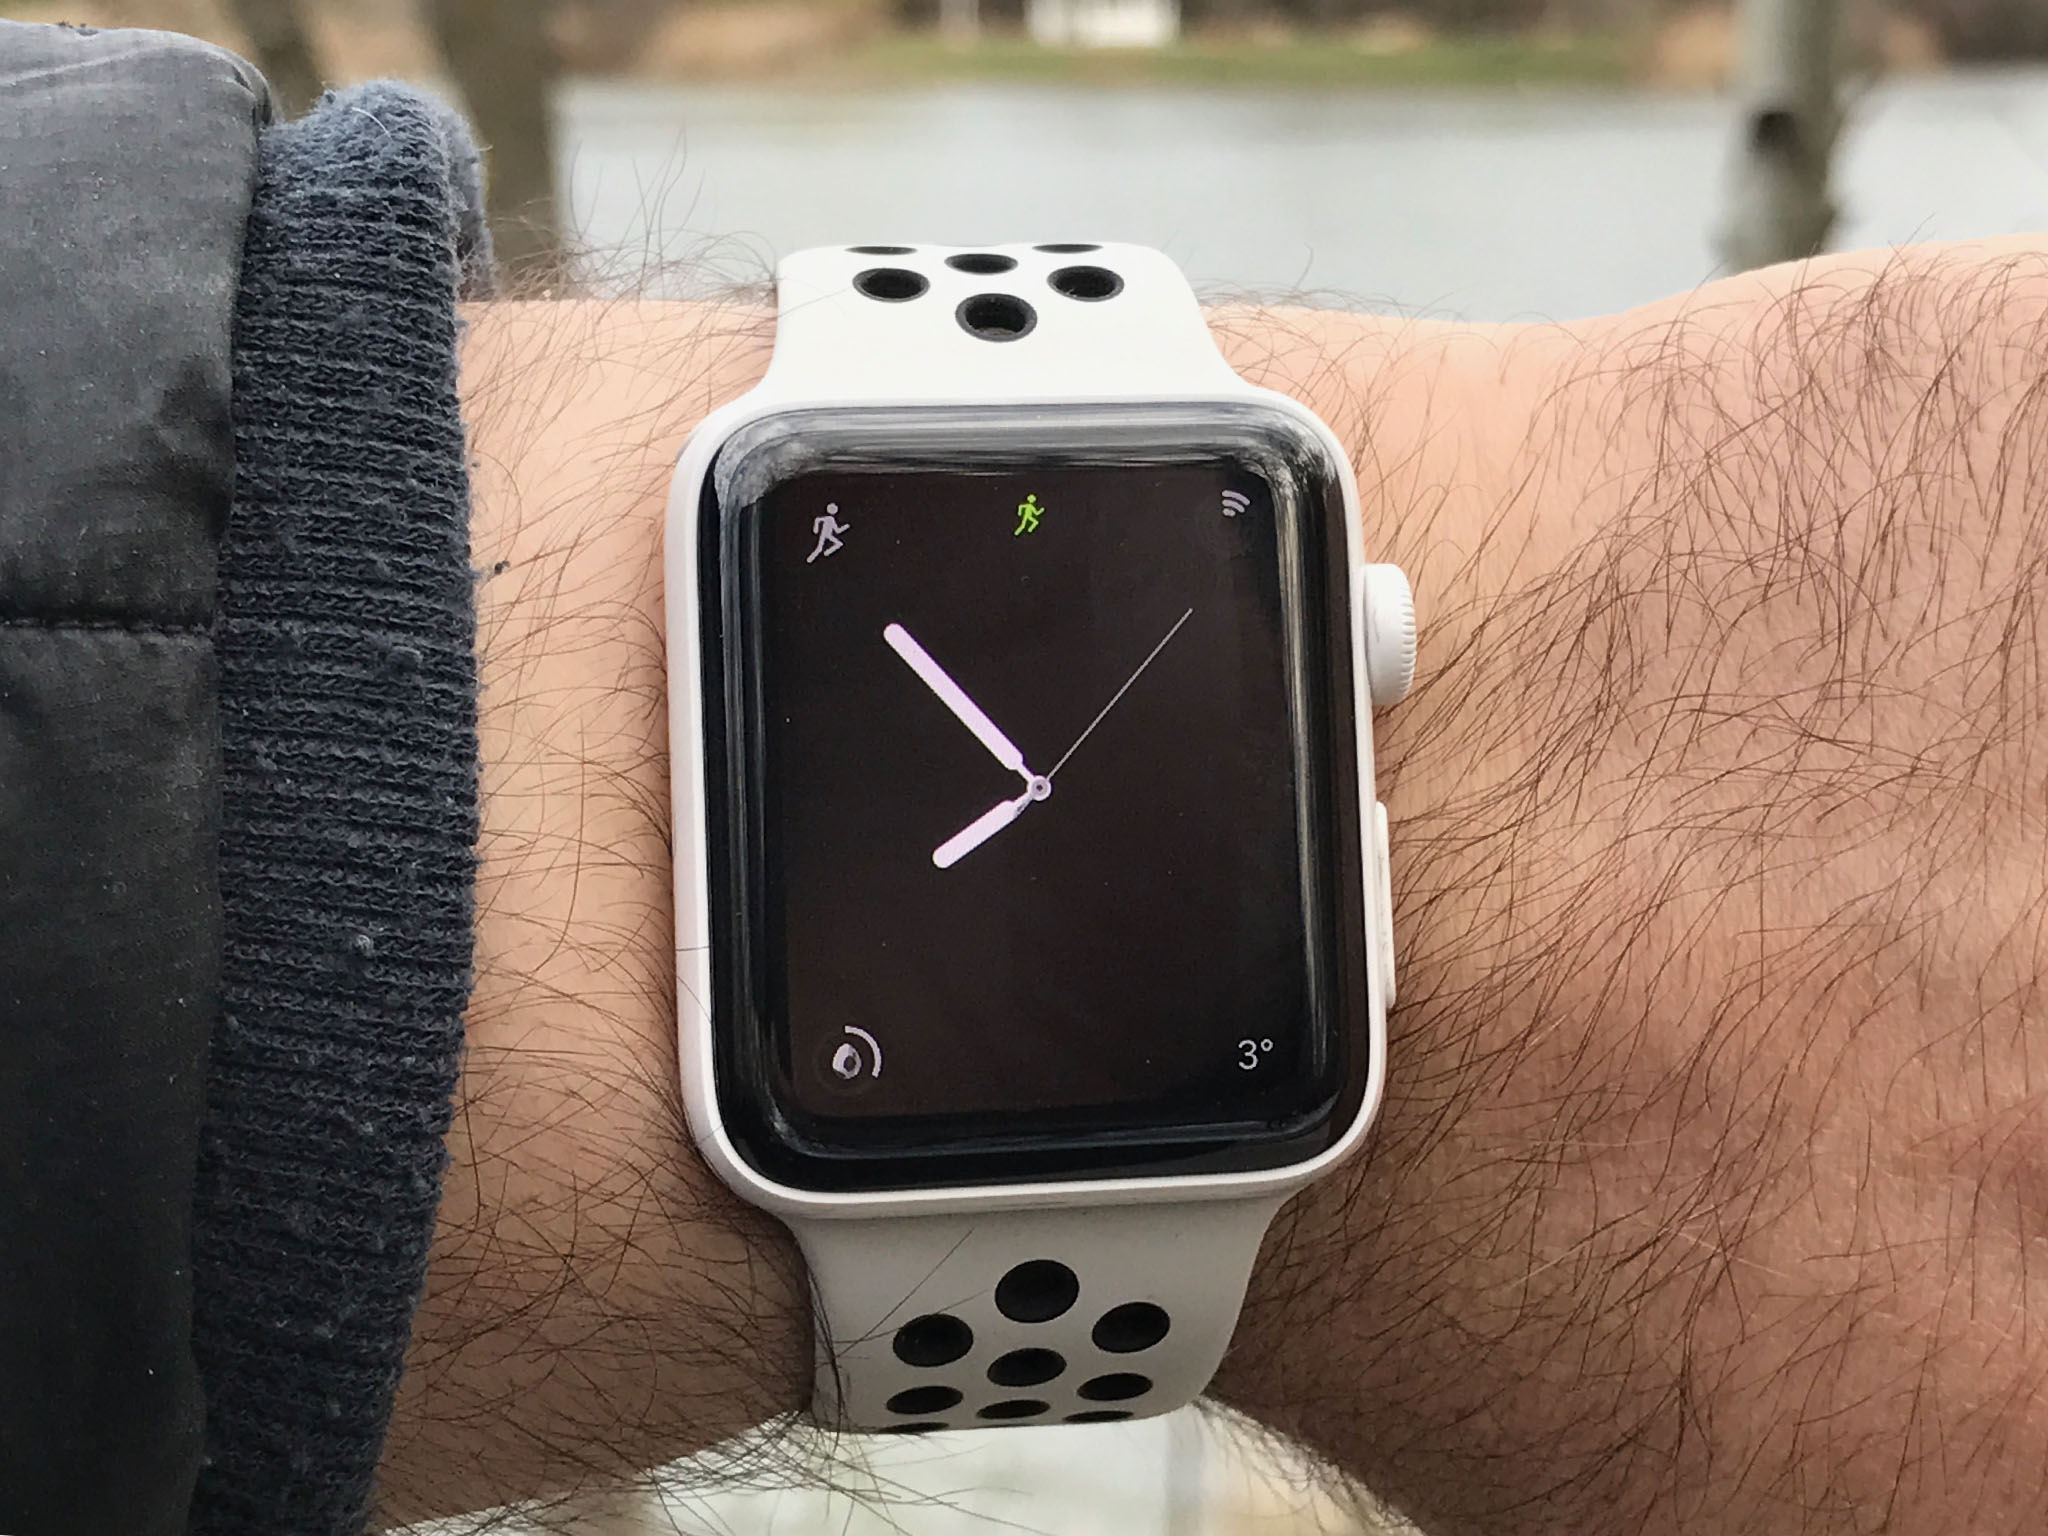 new nike apple watch